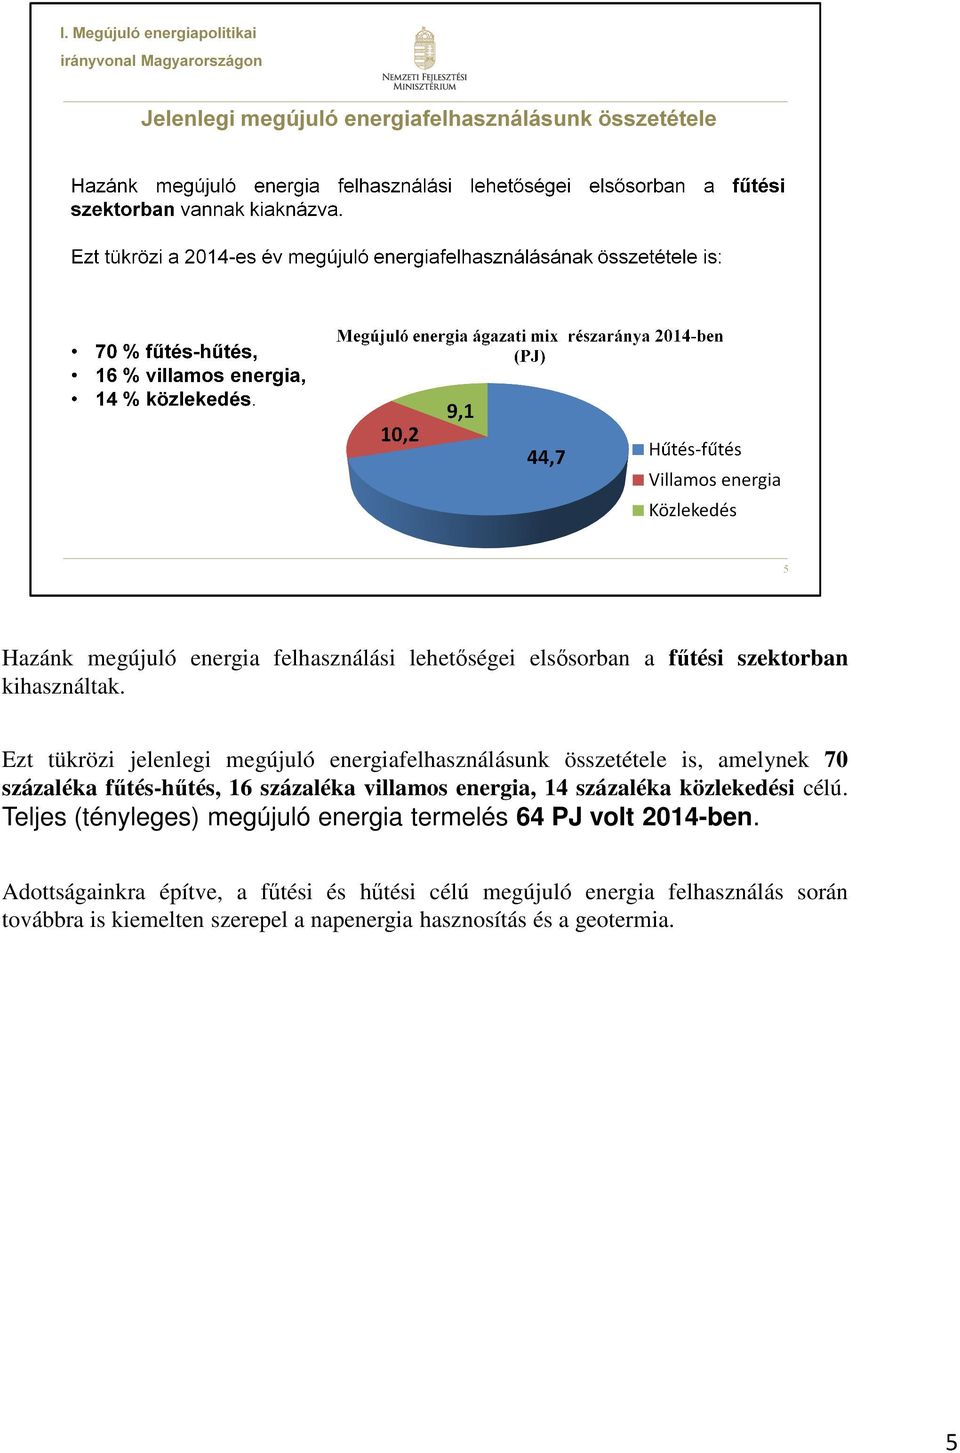 villamos energia, 14 százaléka közlekedési célú. Teljes (tényleges) megújuló energia termelés 64 PJ volt 2014-ben.